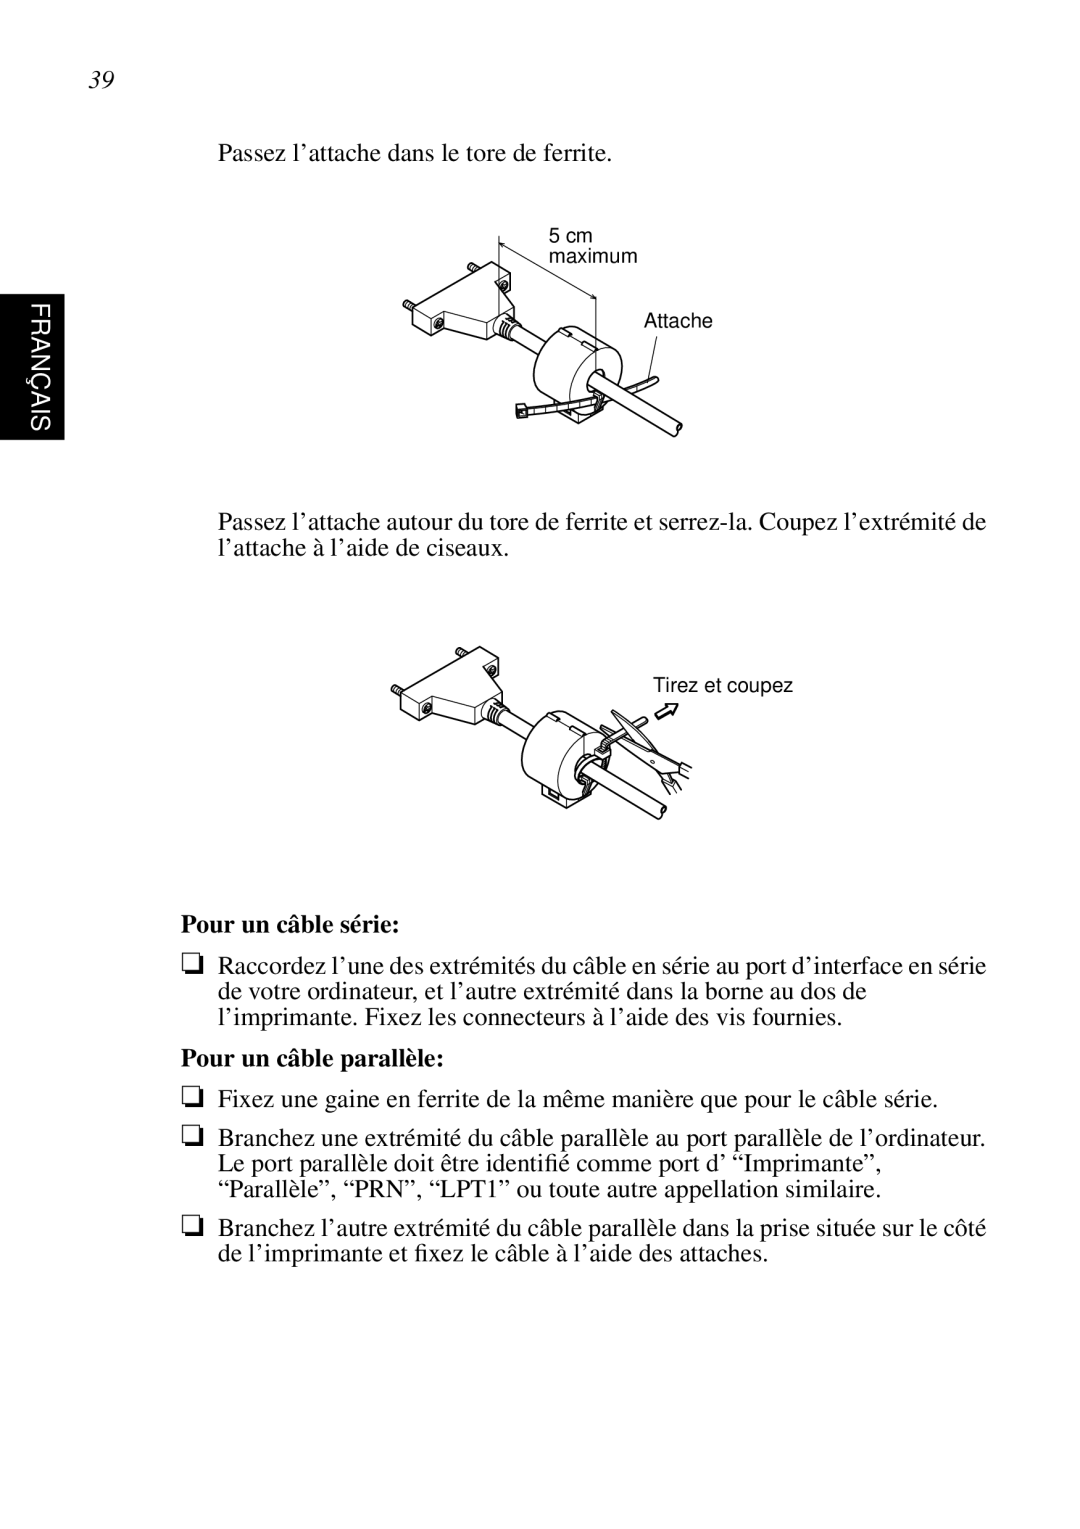 Star Micronics SP298 user manual Français, Pour un câble série, Pour un câble parallèle 